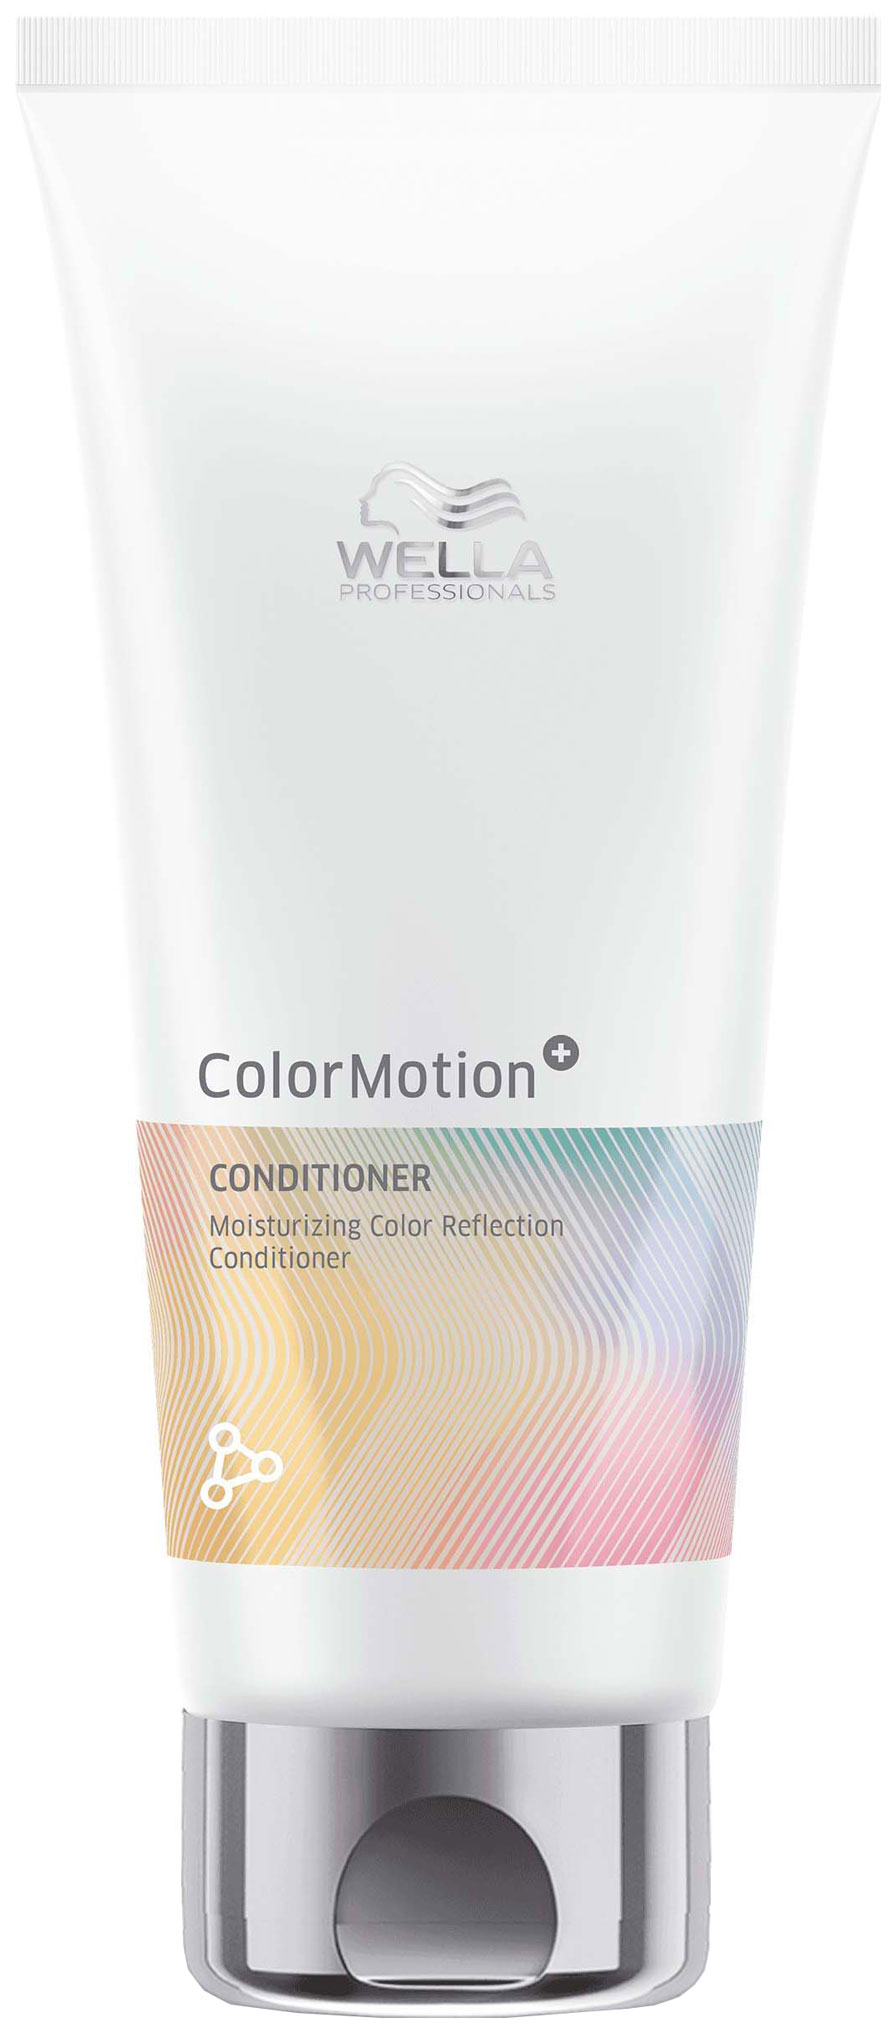 Бальзам Wella Professionals Motion Moisturizing Color Reflection для окрашенных волос праймер спрей для волос перед окрашиванием color motion 5406 185 мл